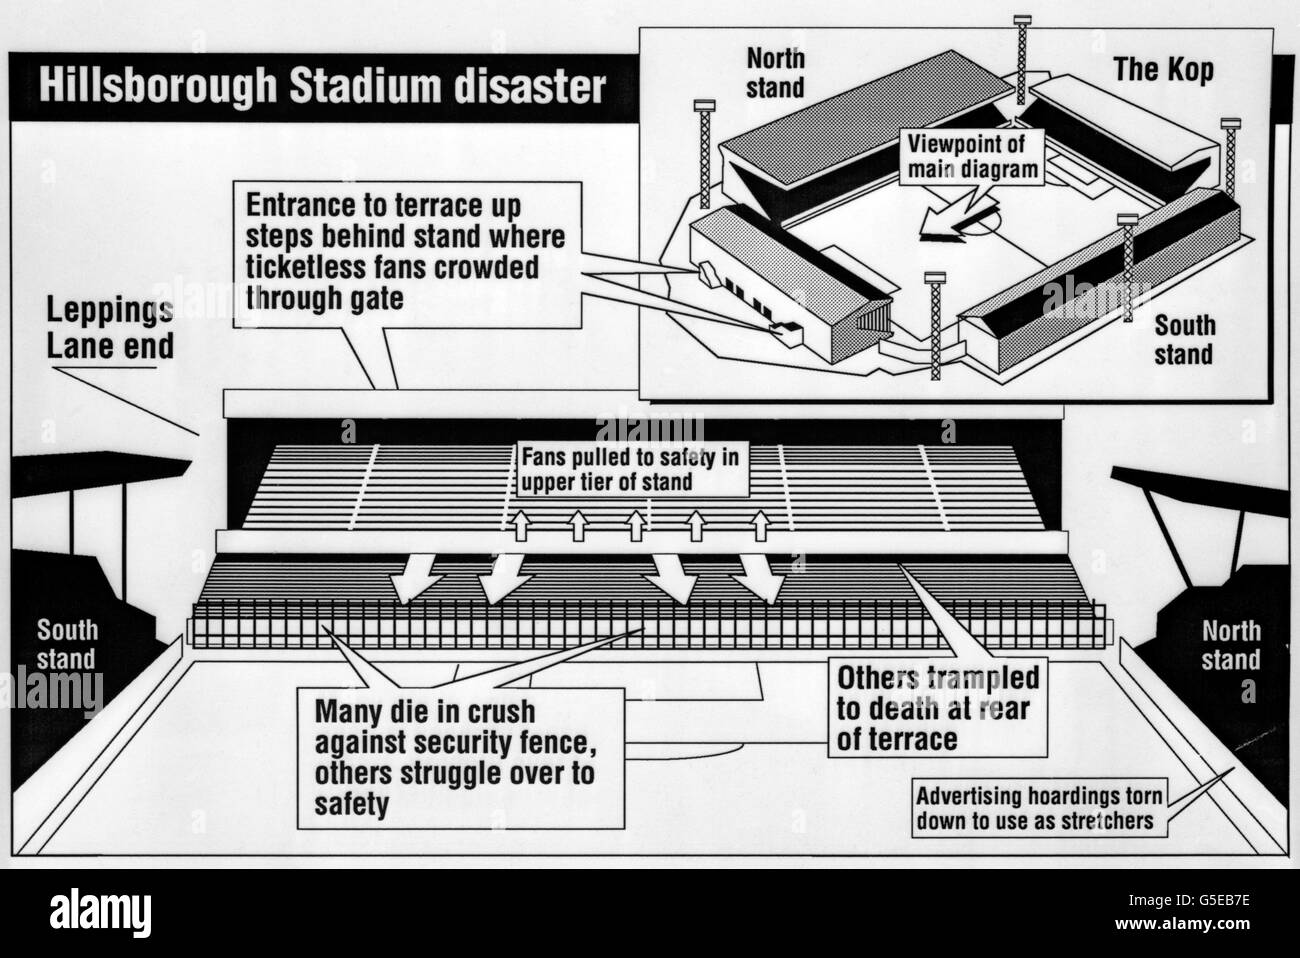 PA grafico che mostra i dettagli dello stadio Hillsborough di Sheffield Wednesday e della zona in cui si è svolta la tragedia durante la semifinale della fa Cup tra Nottingham Forest e Liverpool. Foto Stock